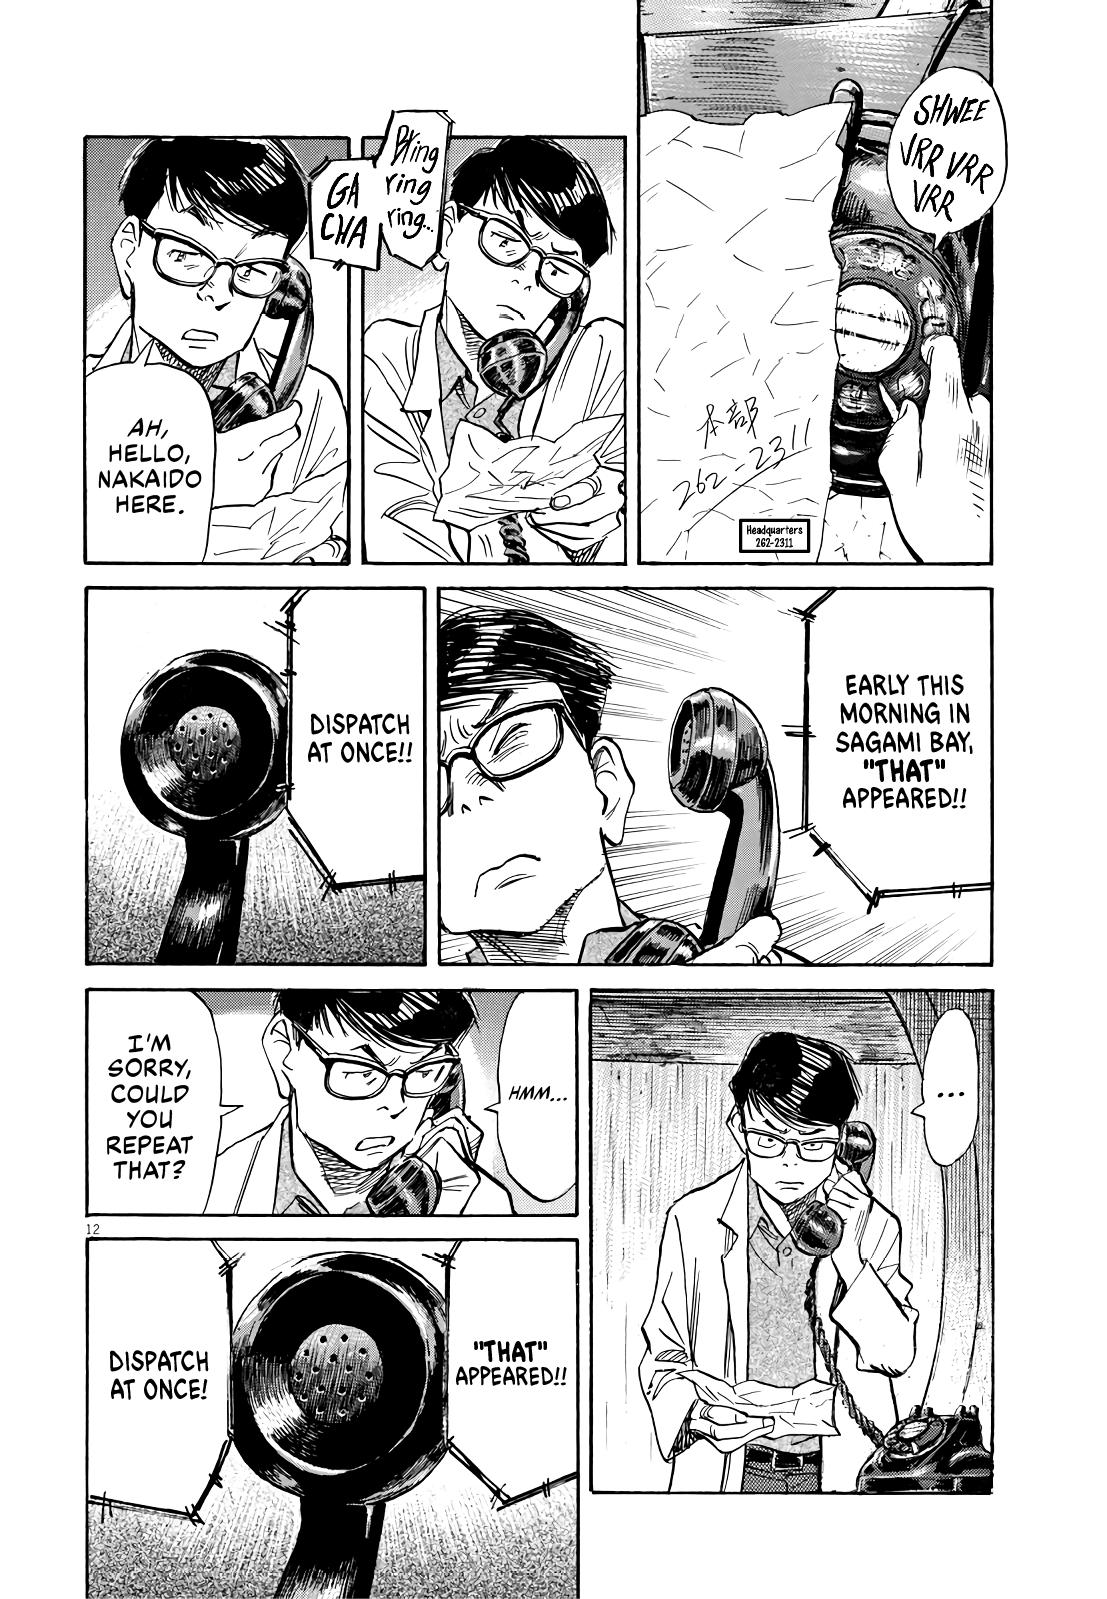 Renzoku Manga Shousetsu: Asadora! Capítulo 26 – Mangás Chan